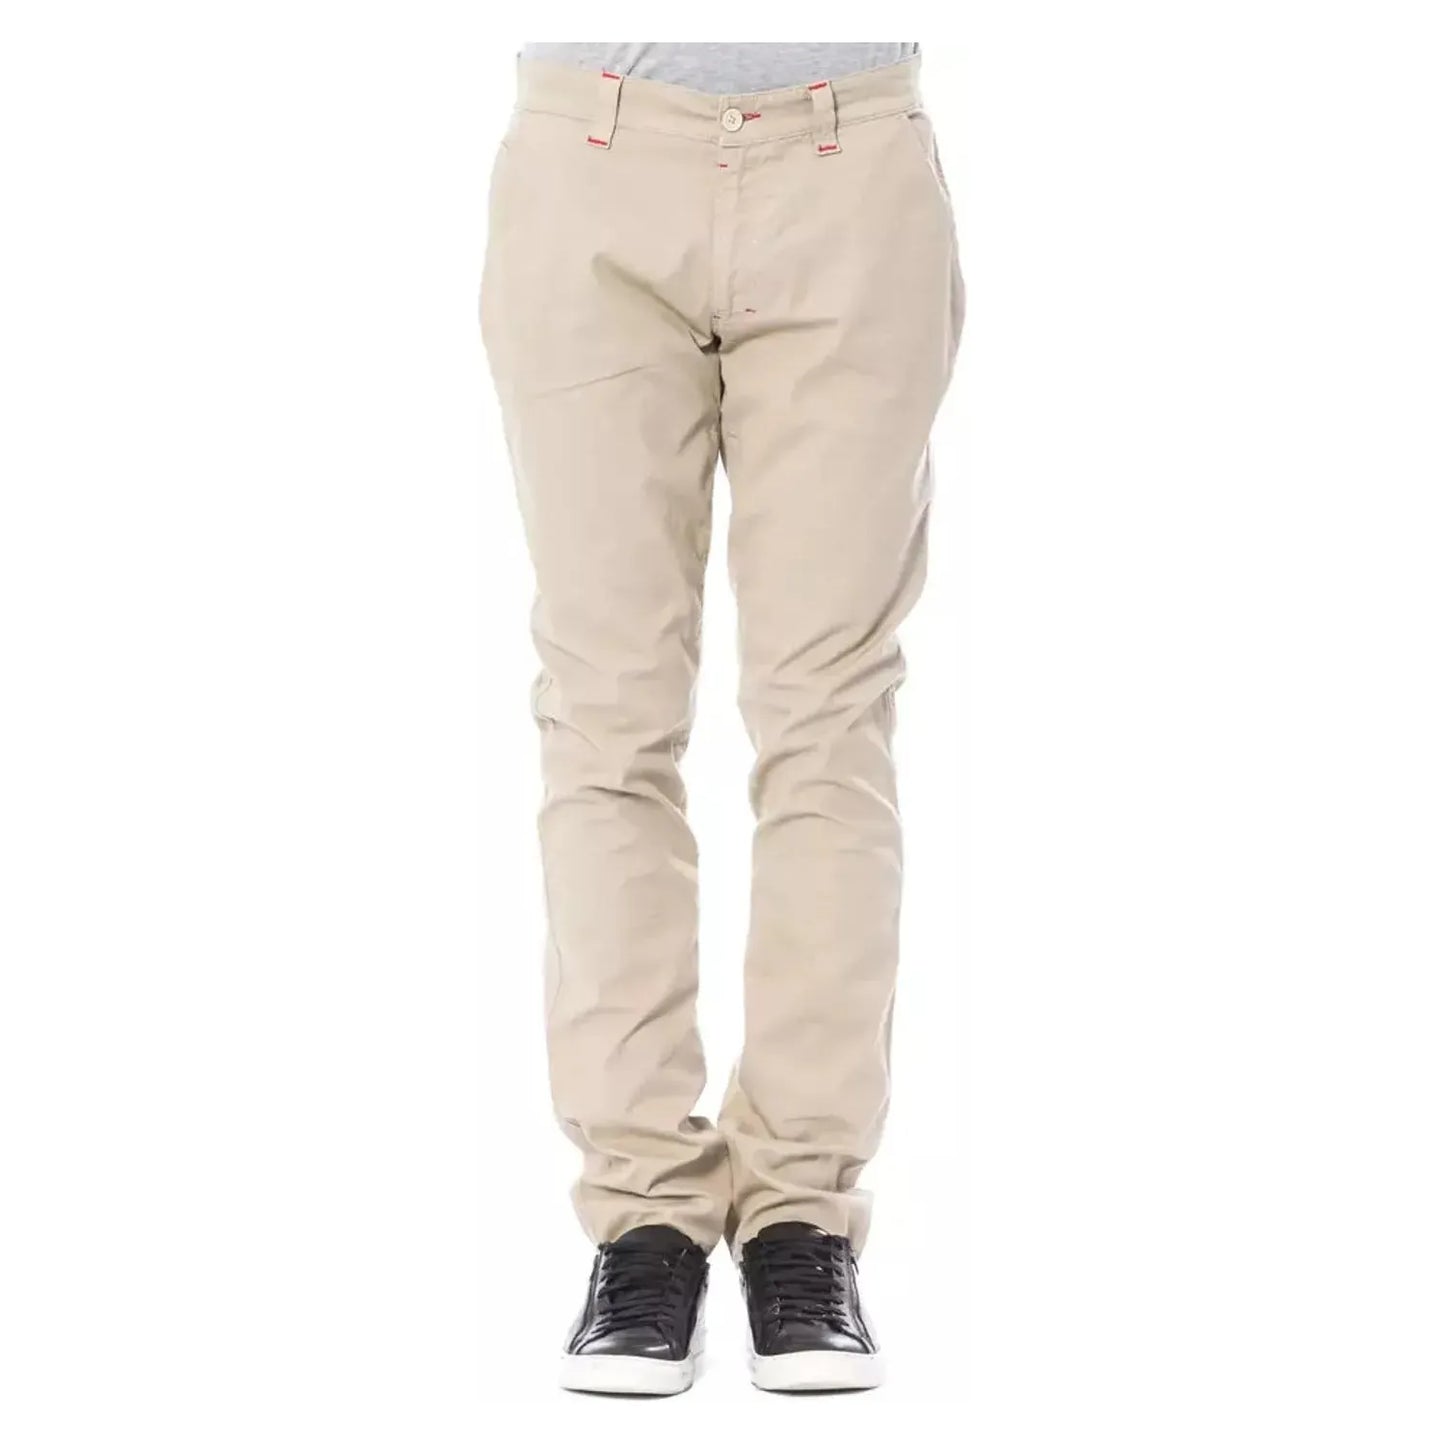 Verri Beige Slim Fit Chino Pants beige-cotton-jeans-pant-14